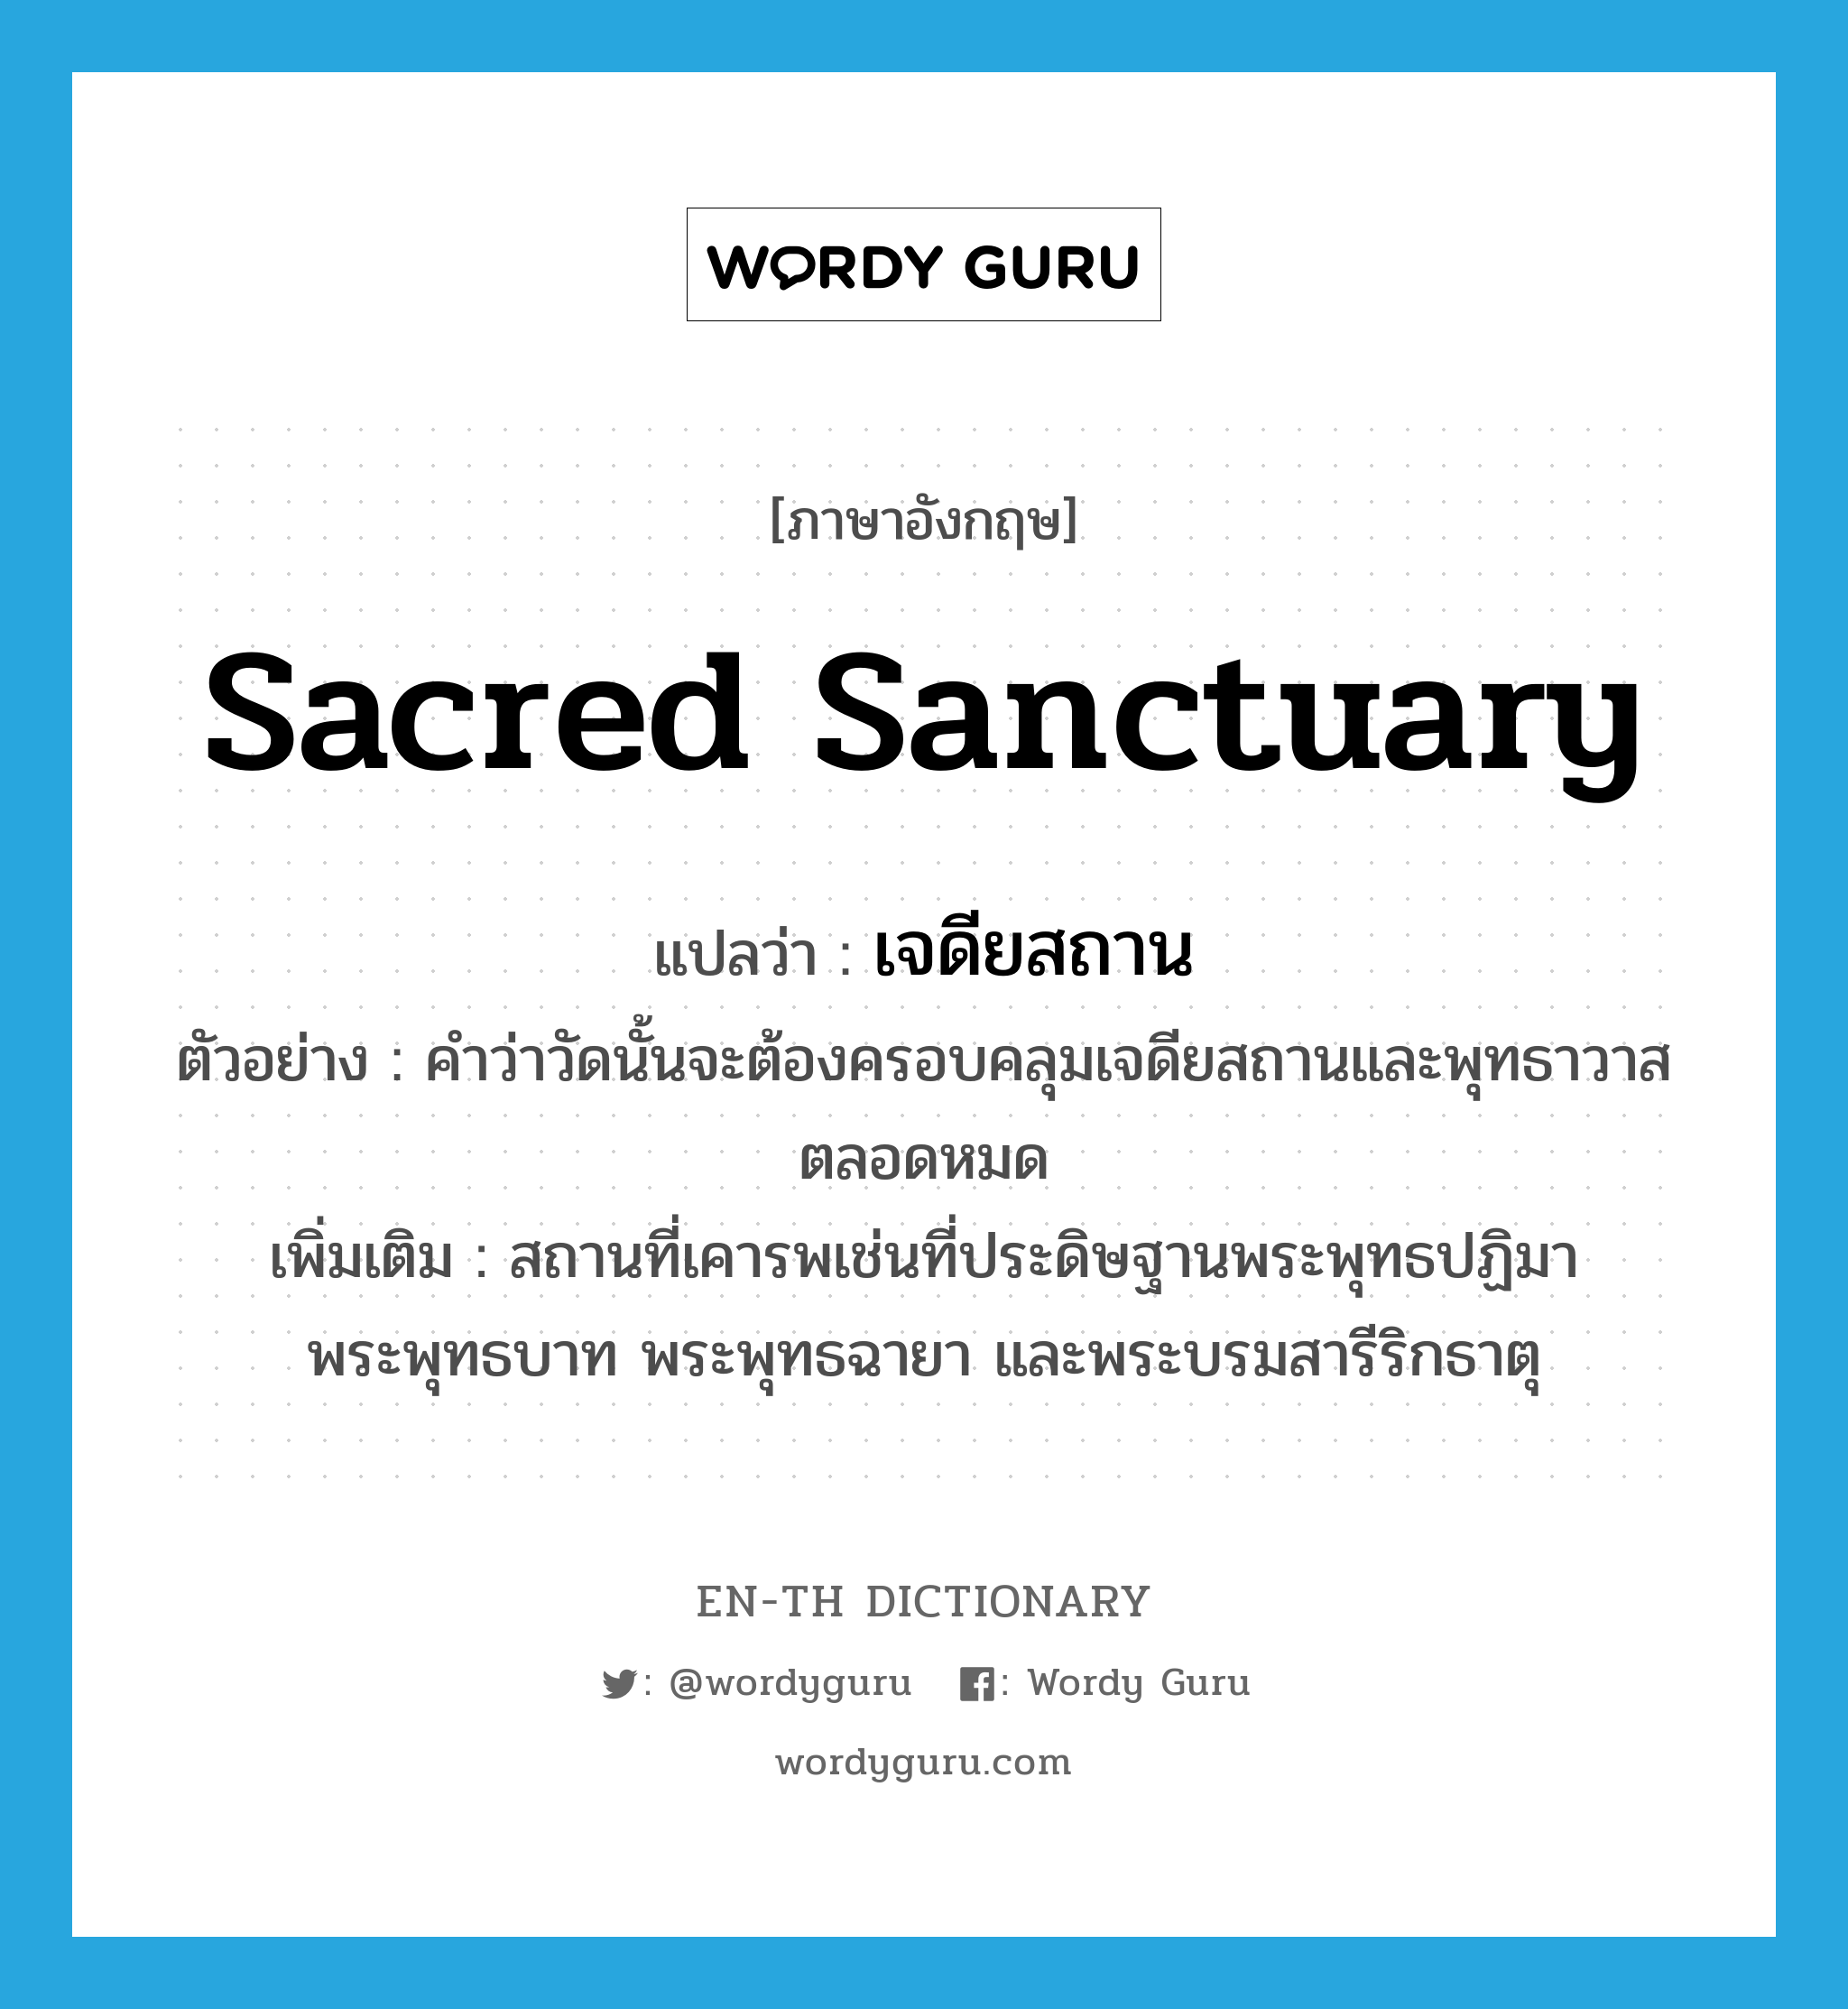 sacred sanctuary แปลว่า?, คำศัพท์ภาษาอังกฤษ sacred sanctuary แปลว่า เจดียสถาน ประเภท N ตัวอย่าง คำว่าวัดนั้นจะต้องครอบคลุมเจดียสถานและพุทธาวาสตลอดหมด เพิ่มเติม สถานที่เคารพเช่นที่ประดิษฐานพระพุทธปฏิมา พระพุทธบาท พระพุทธฉายา และพระบรมสารีริกธาตุ หมวด N